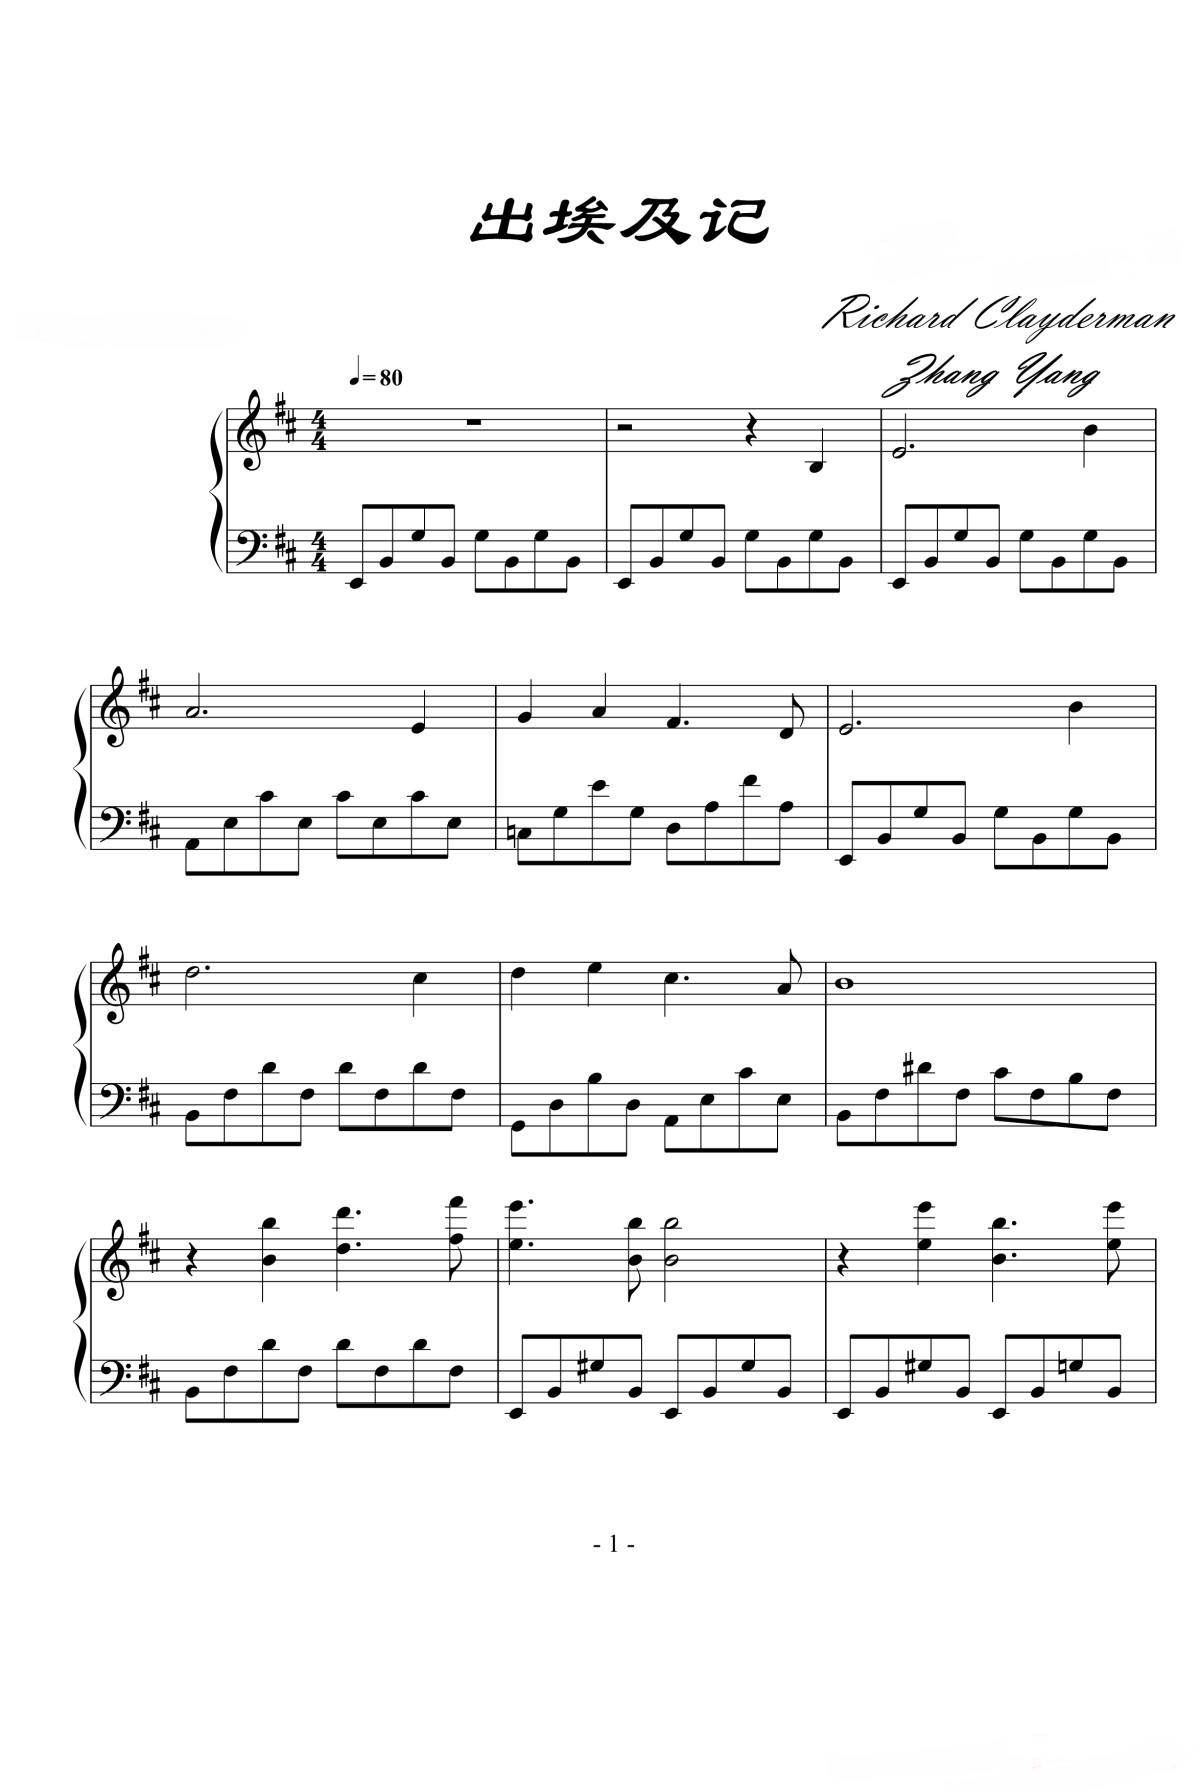 《出埃及记》的钢琴谱钢琴曲谱 - Richard Clayderman